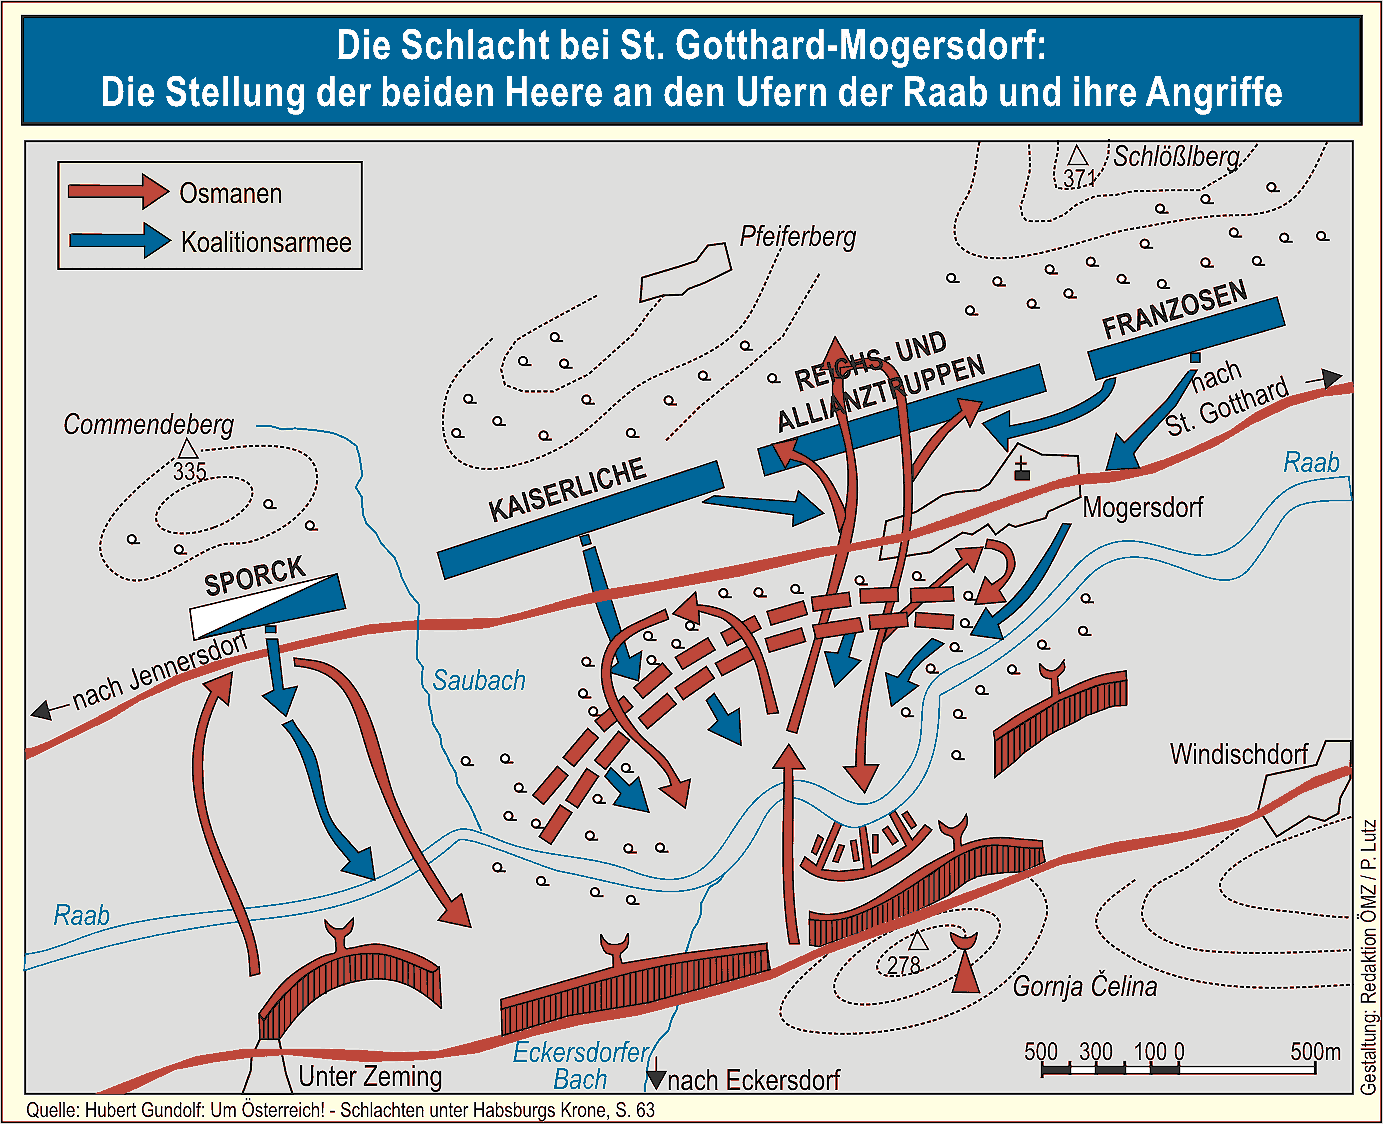 Die Schlacht bei St. Gotthard-Mogersdorf.